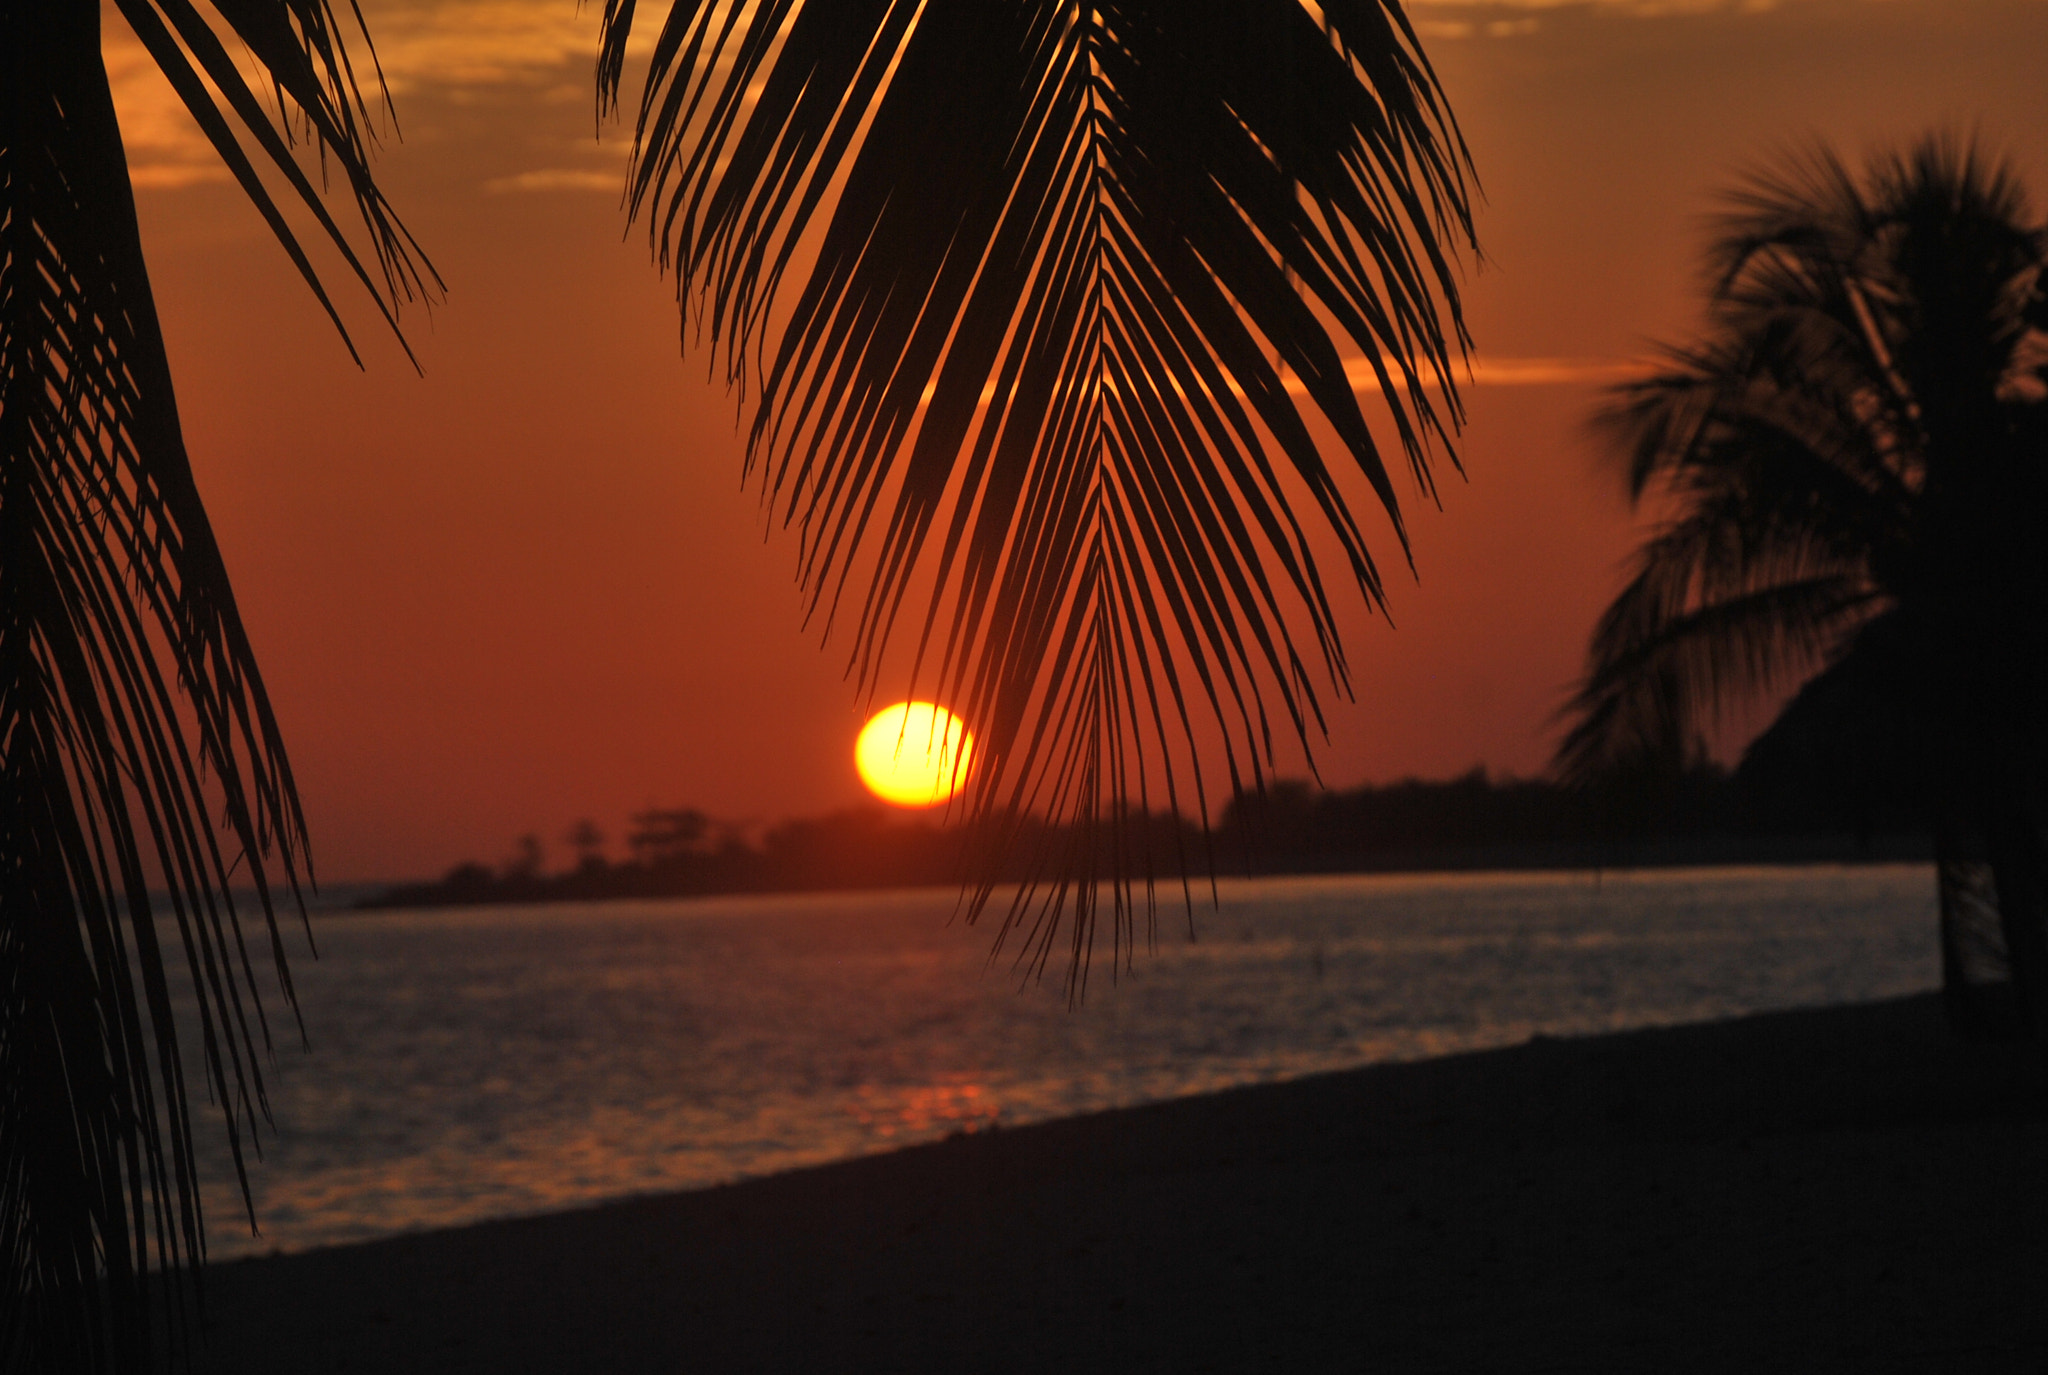 Nikon D60 sample photo. Atardecer en playa cubana photography